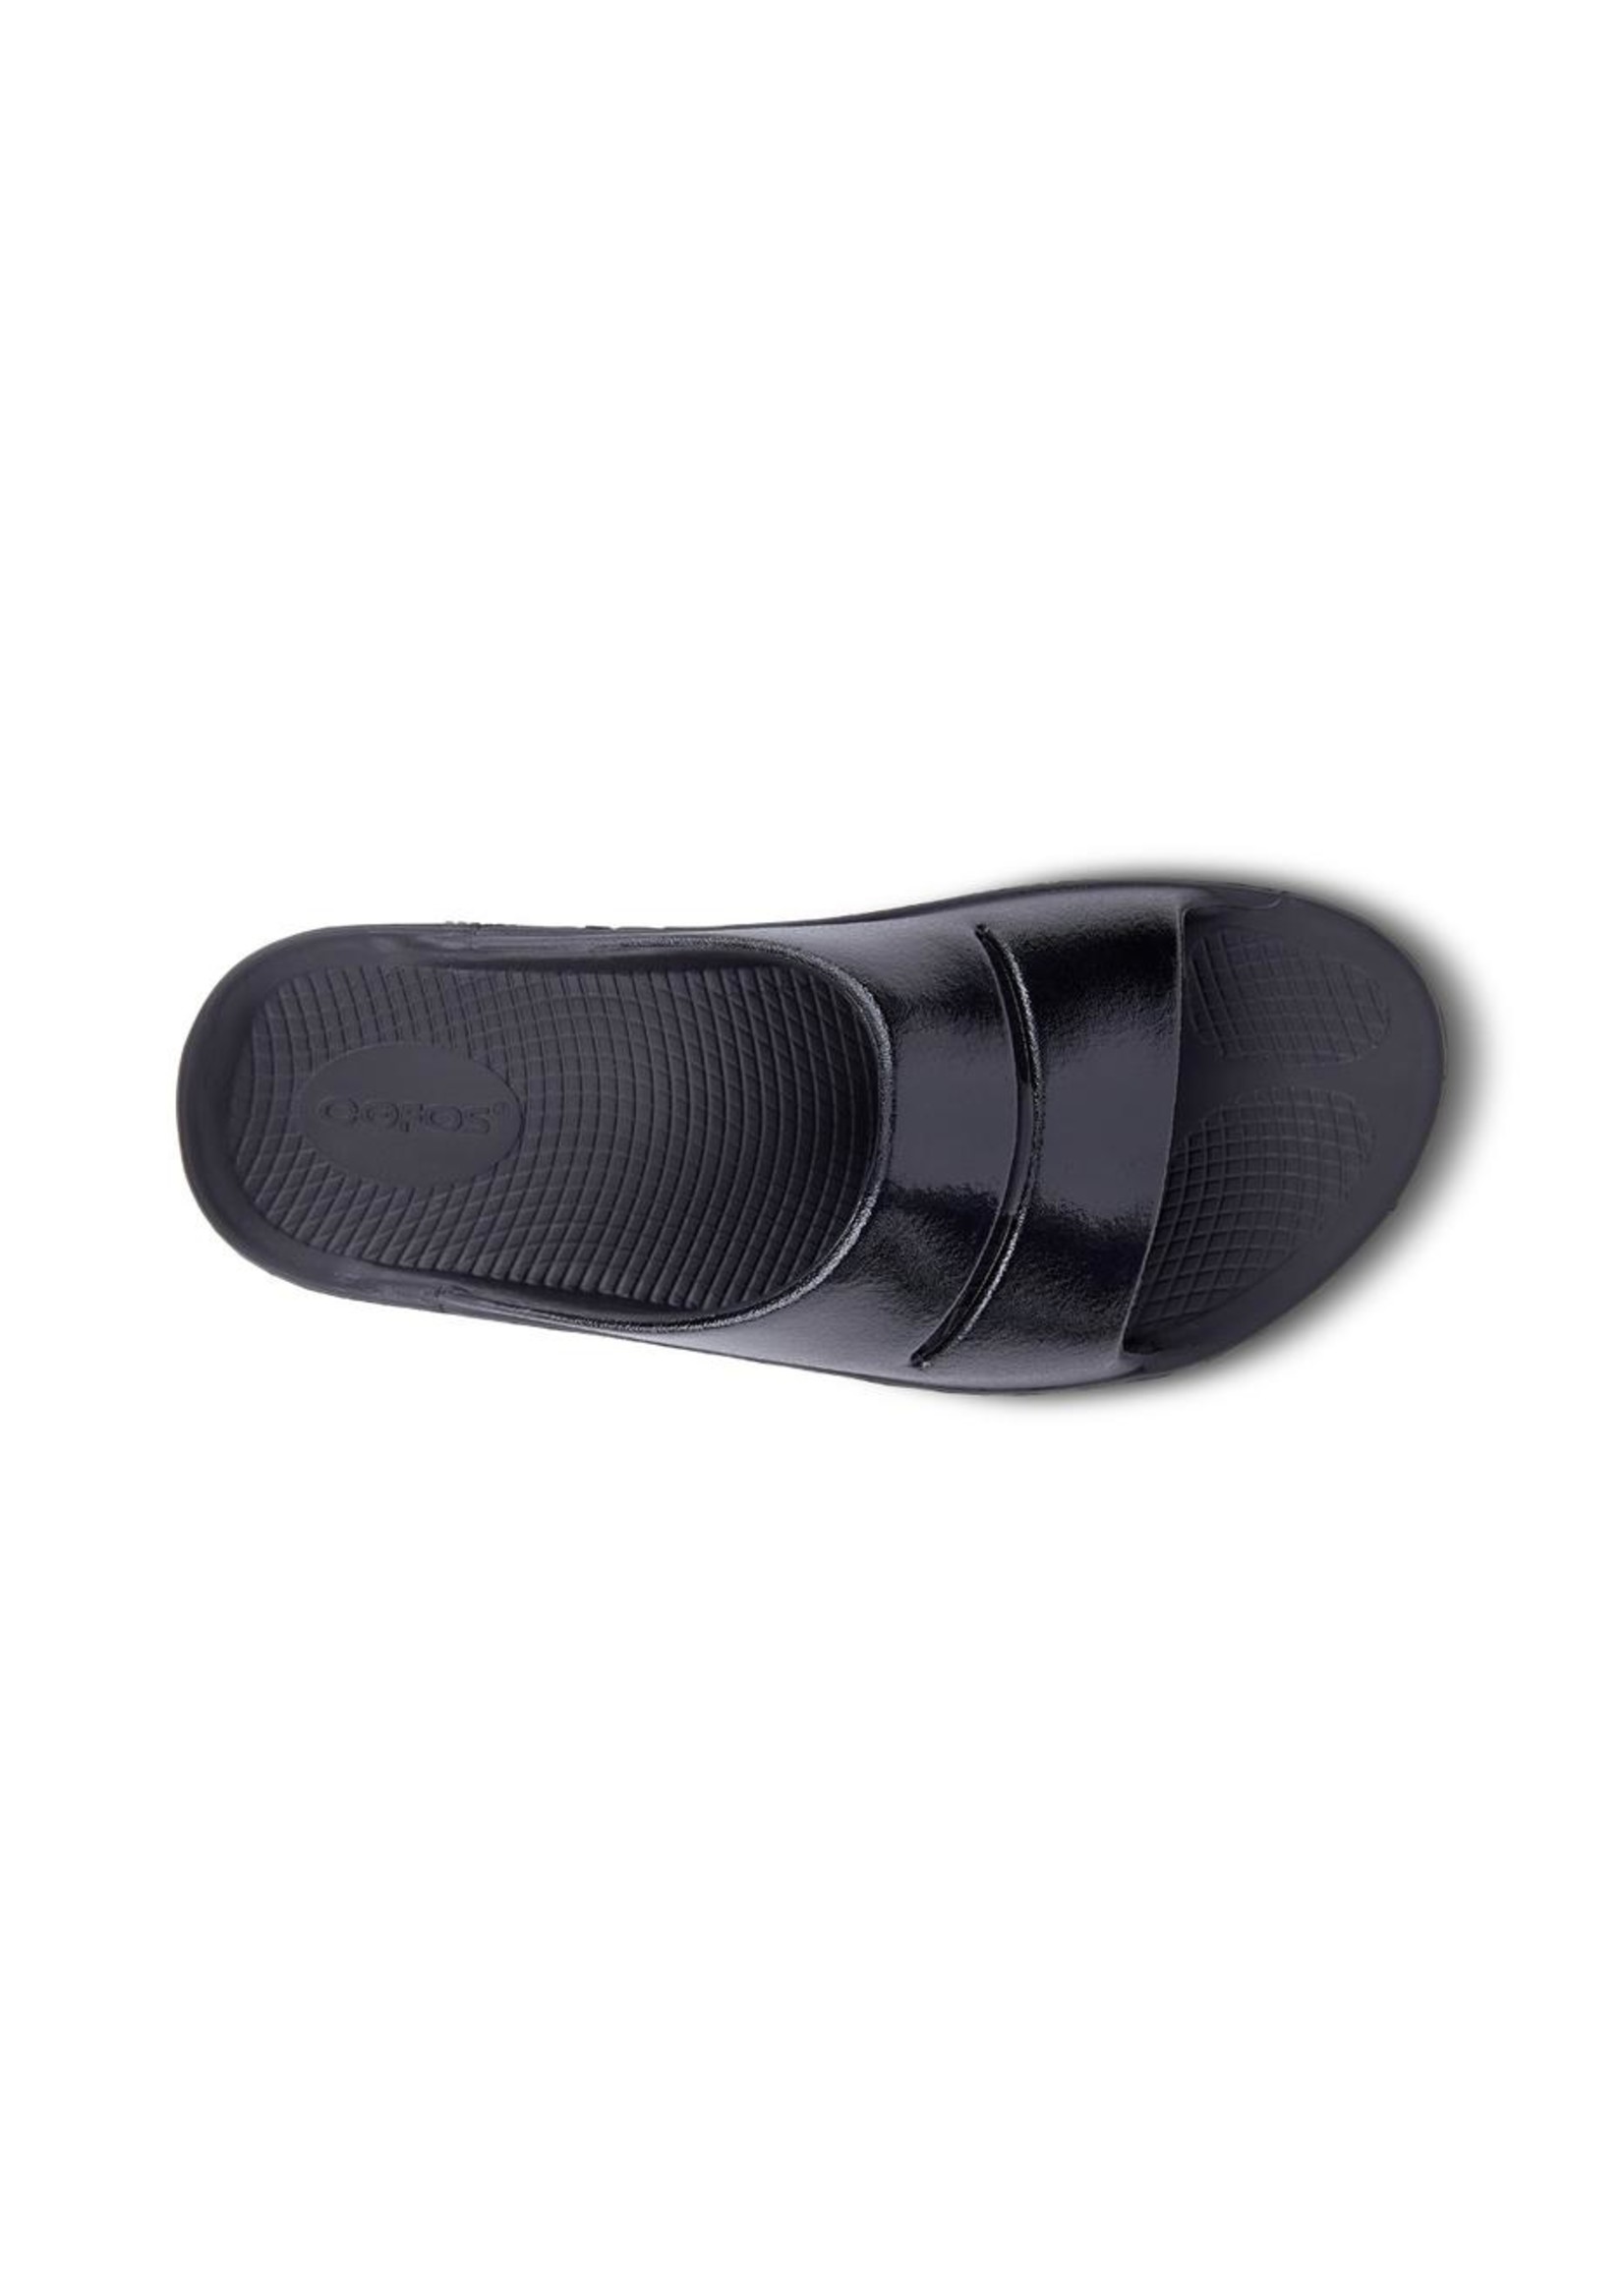 OOFOS Women's OOahh Luxe Slide Sandal